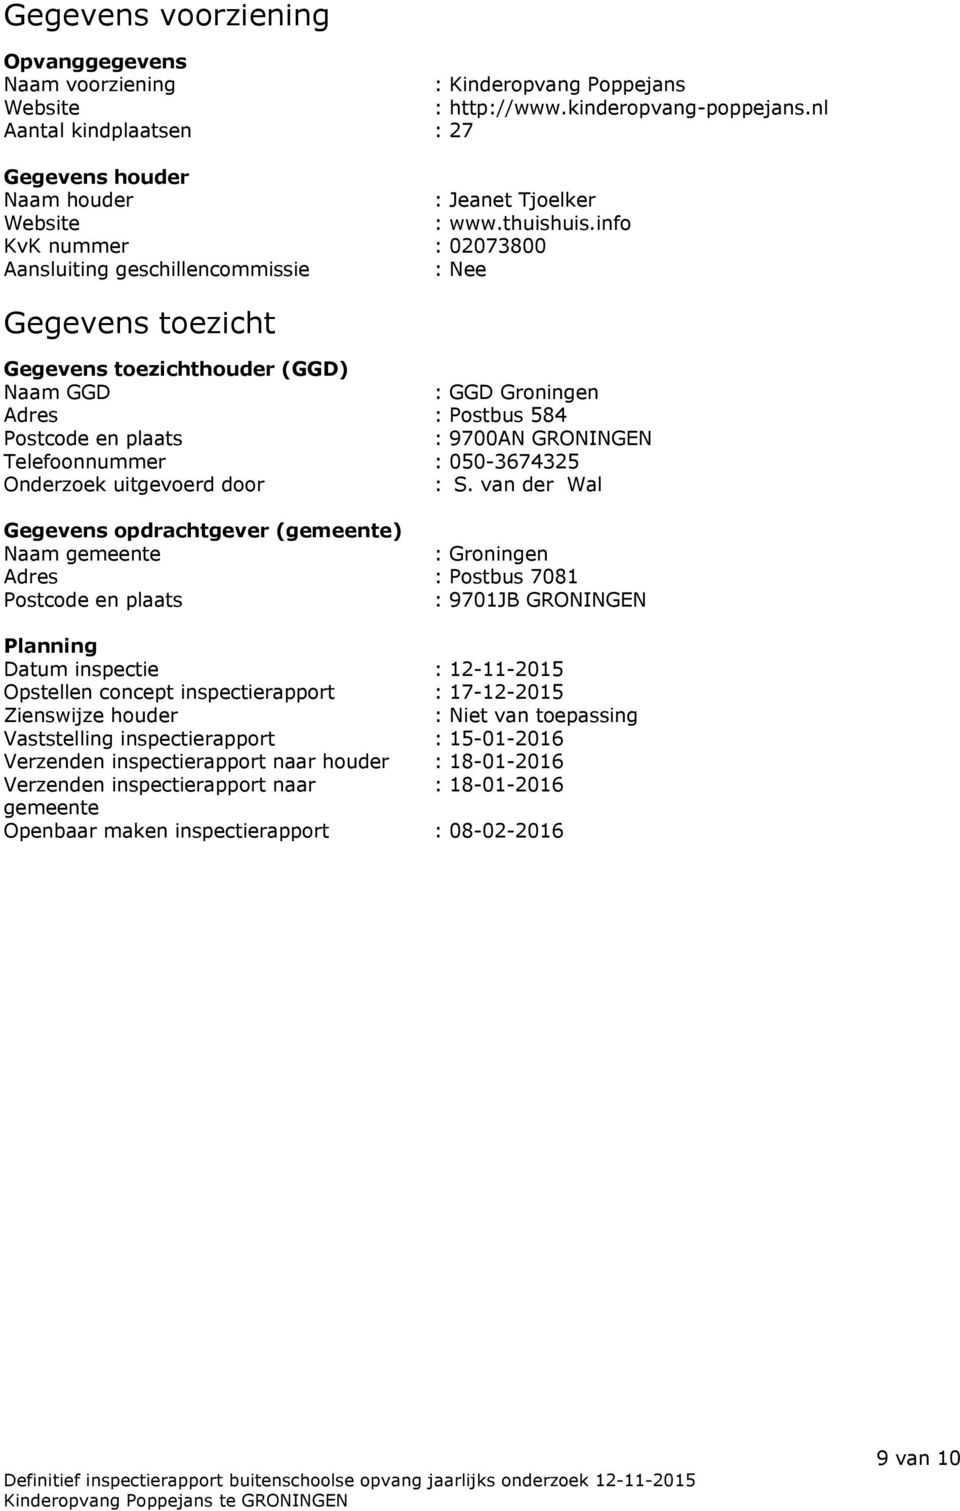 info KvK nummer : 02073800 Aansluiting geschillencommissie : Nee Gegevens toezicht Gegevens toezichthouder (GGD) Naam GGD : GGD Groningen Adres : Postbus 584 Postcode en plaats : 9700AN GRONINGEN